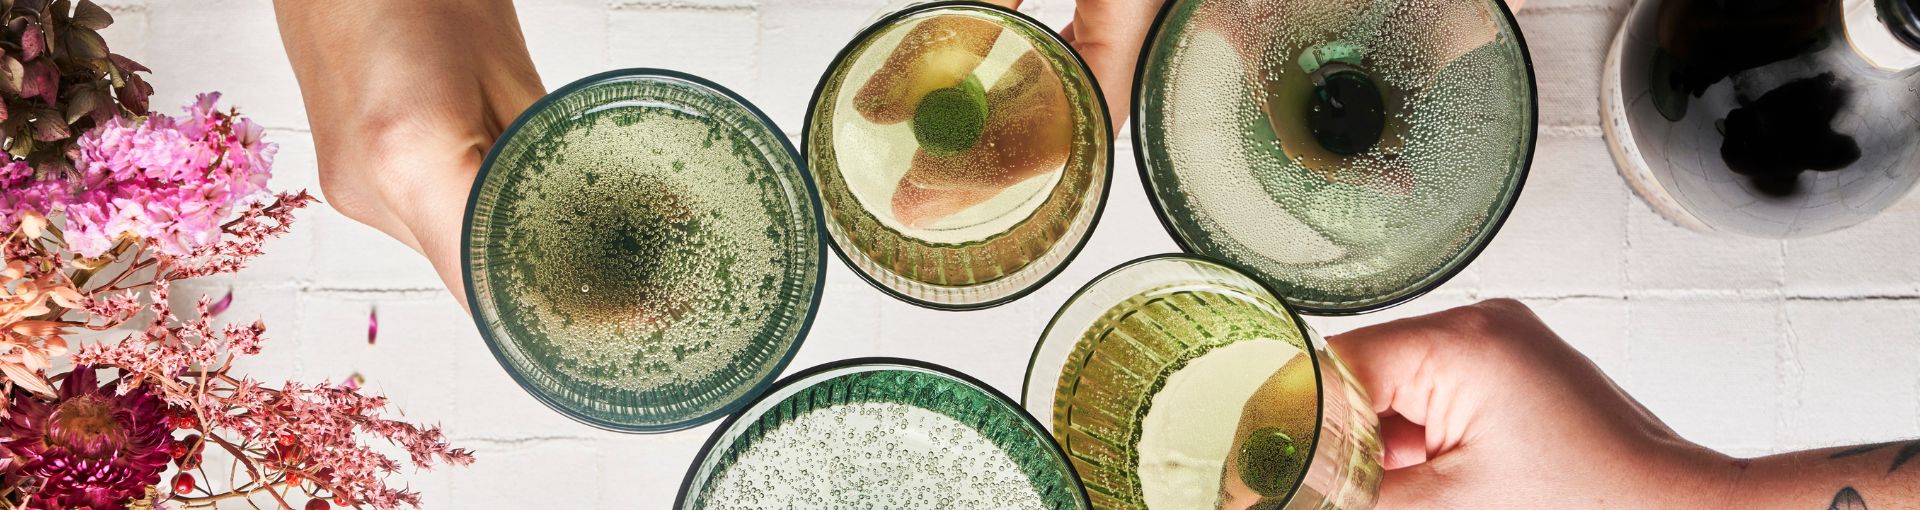 Gläser aus grünem Glas in unterschiedlichen Formen, gefüllt mit Sekt, stoßen an